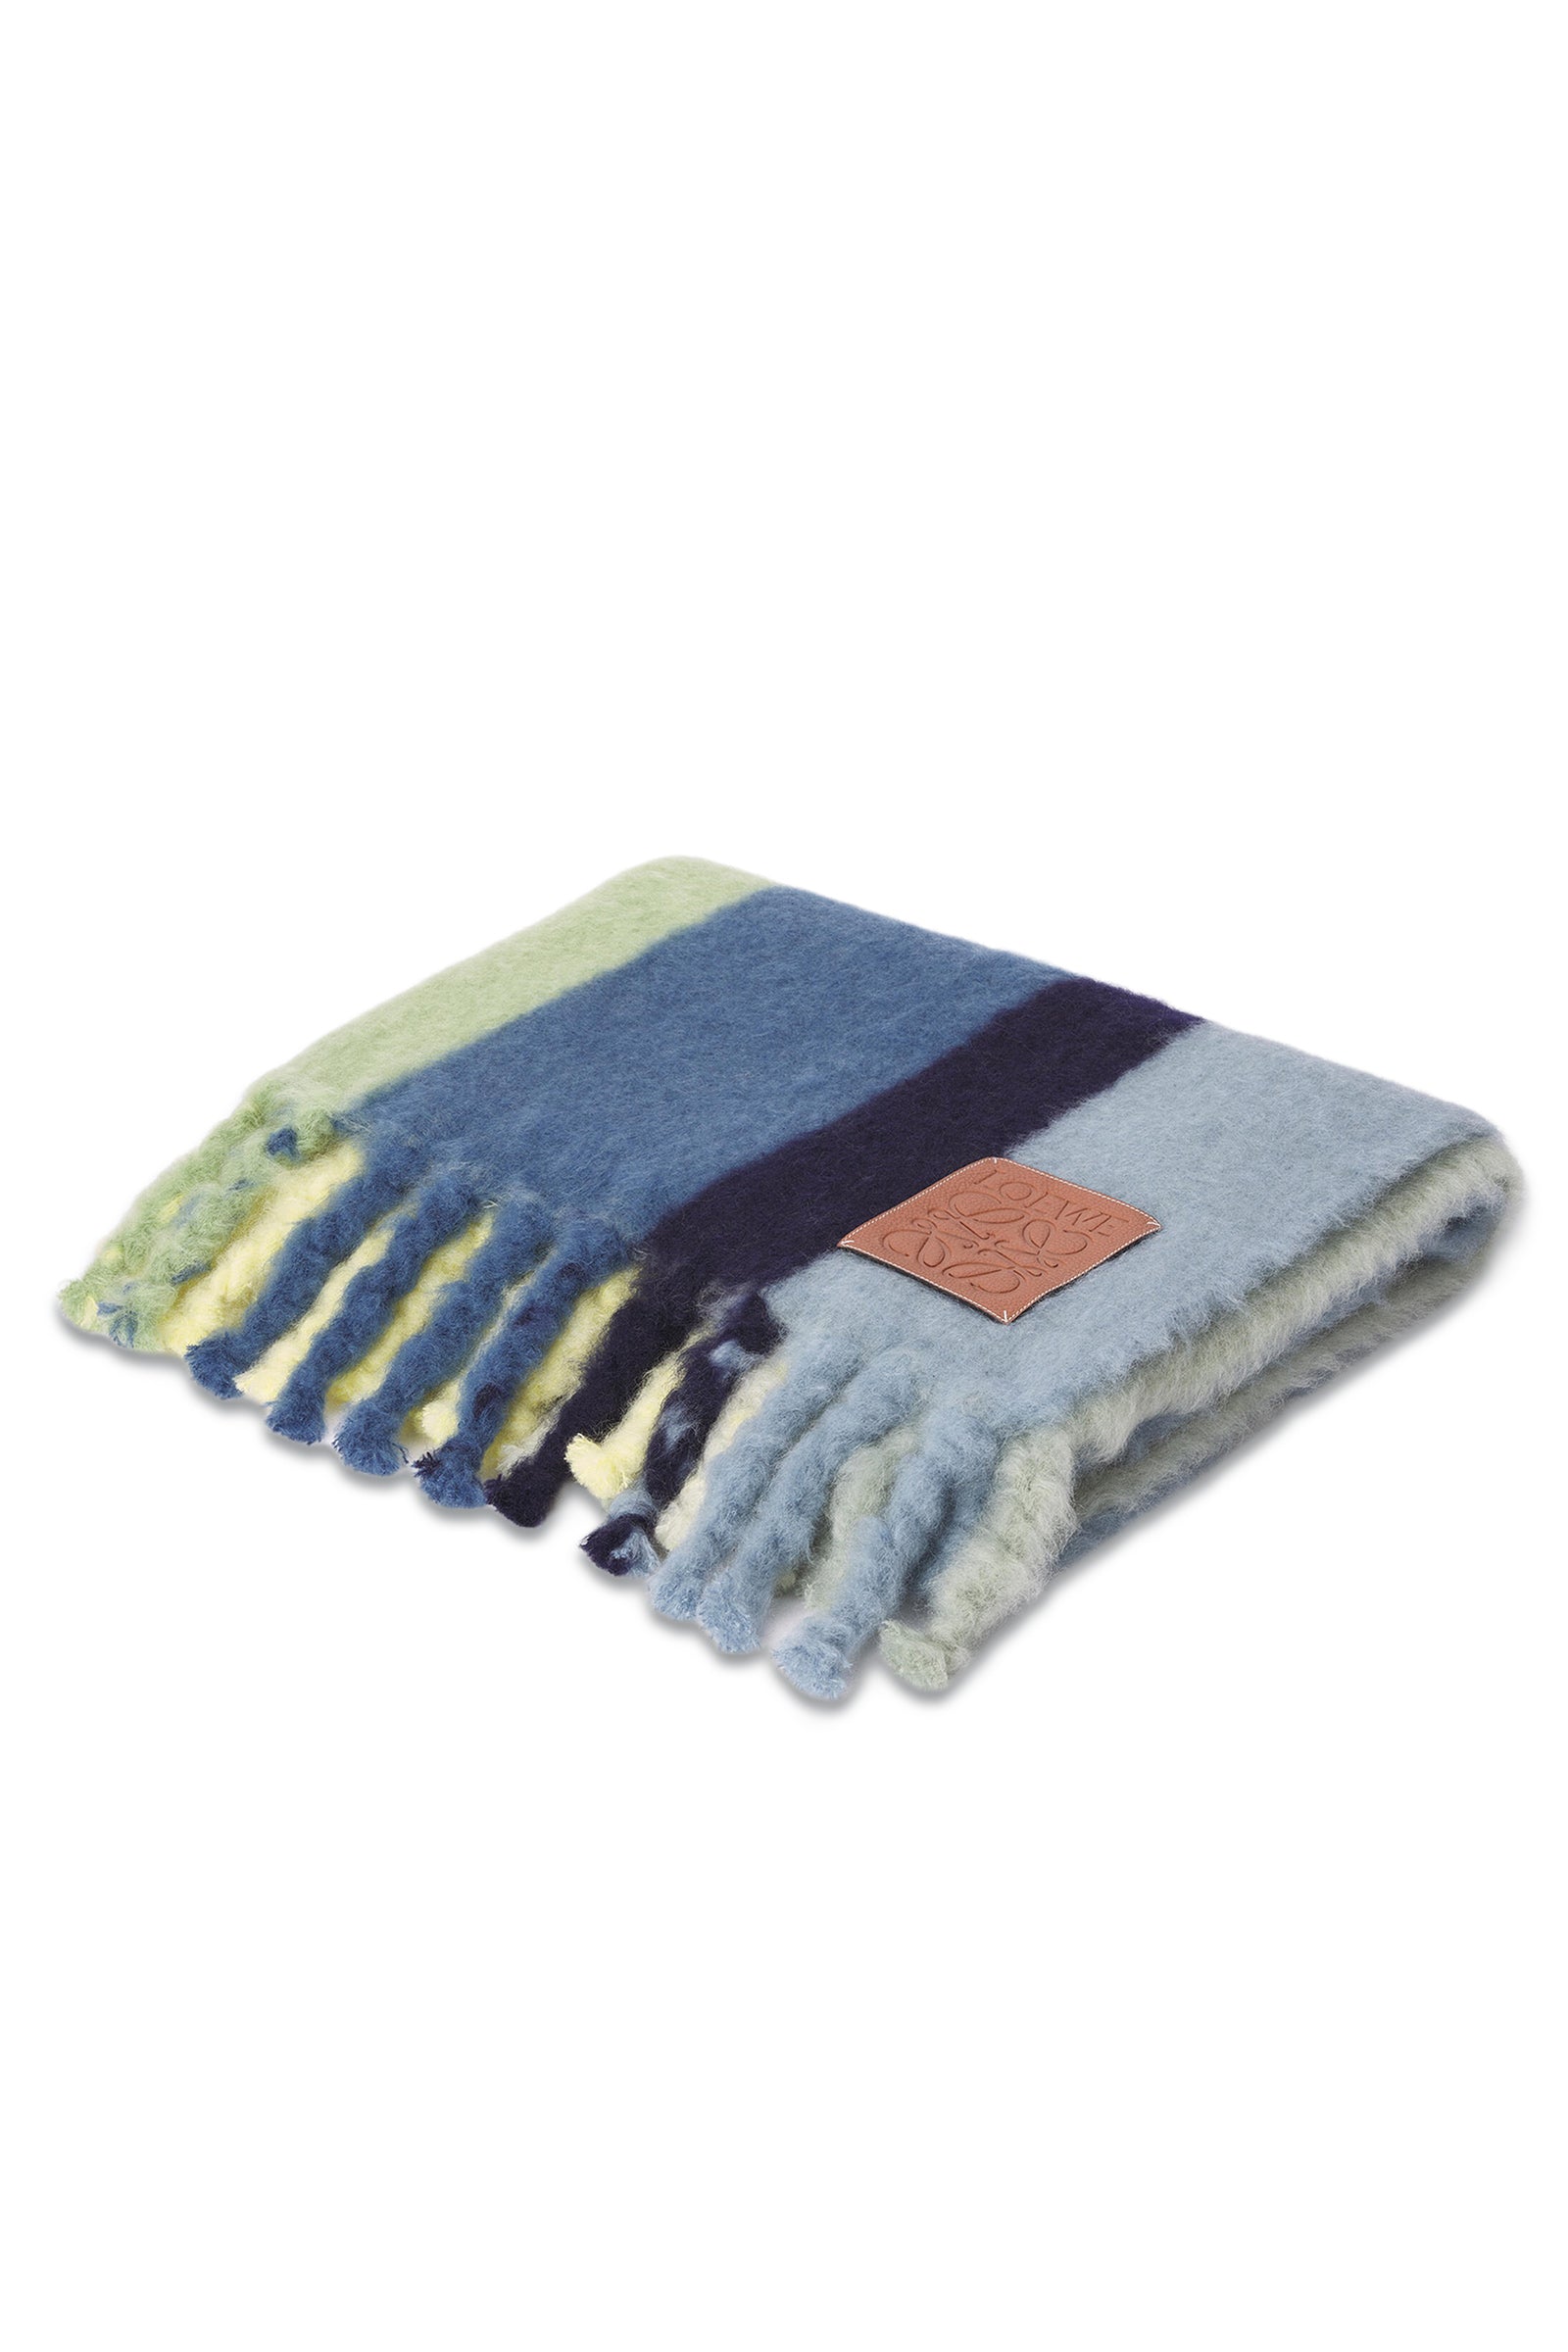 Loewe Stripe Blanket In Mohair And Wool | Wardrobe Icons